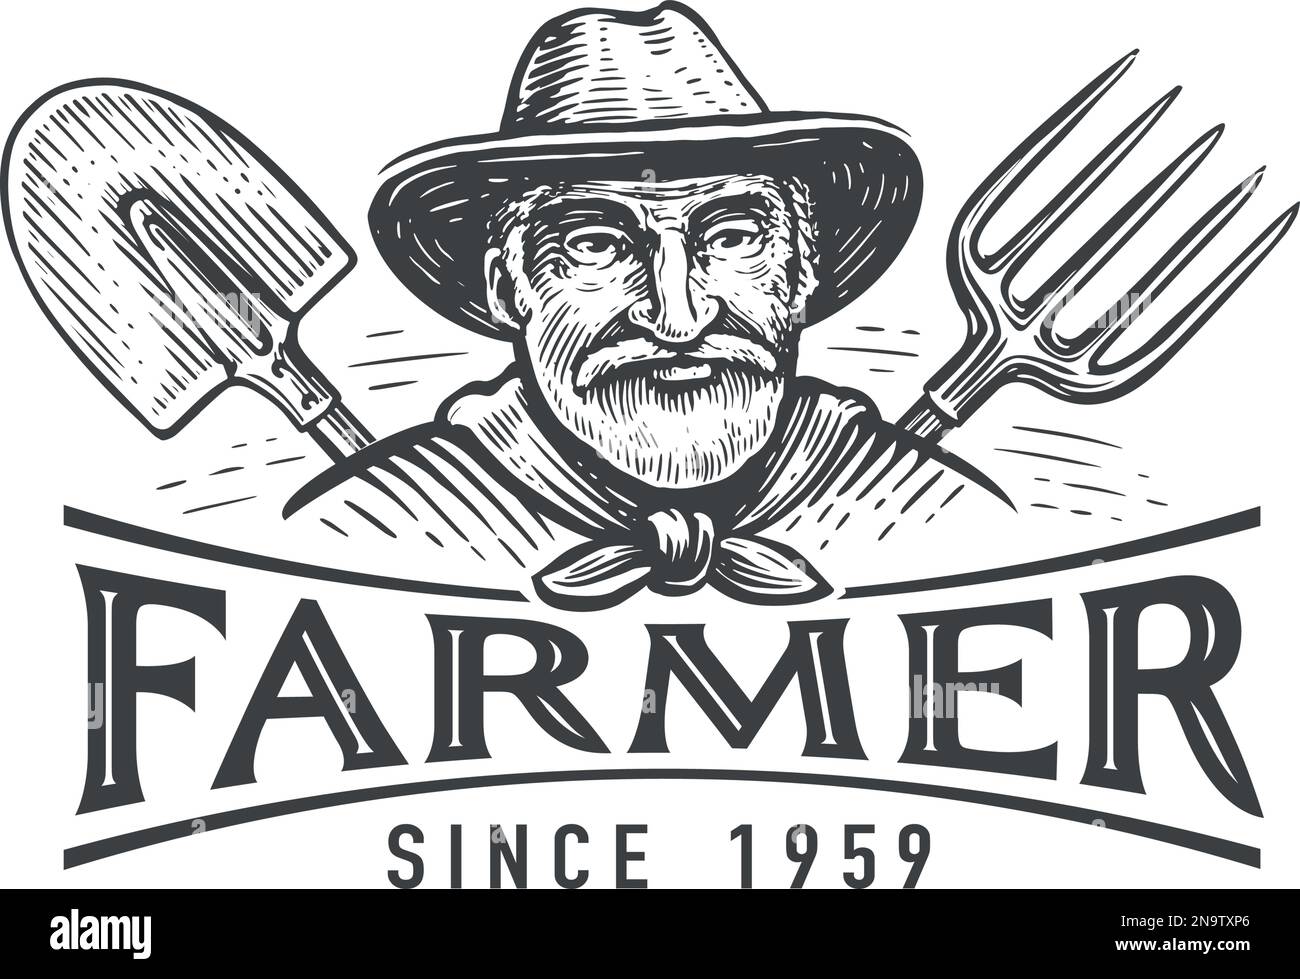 Ritratto di un agricoltore anziano in un cappello, una spade e una forchetta, emblema. Azienda agricola, logo agricolo. Illustrazione vettoriale vintage Illustrazione Vettoriale